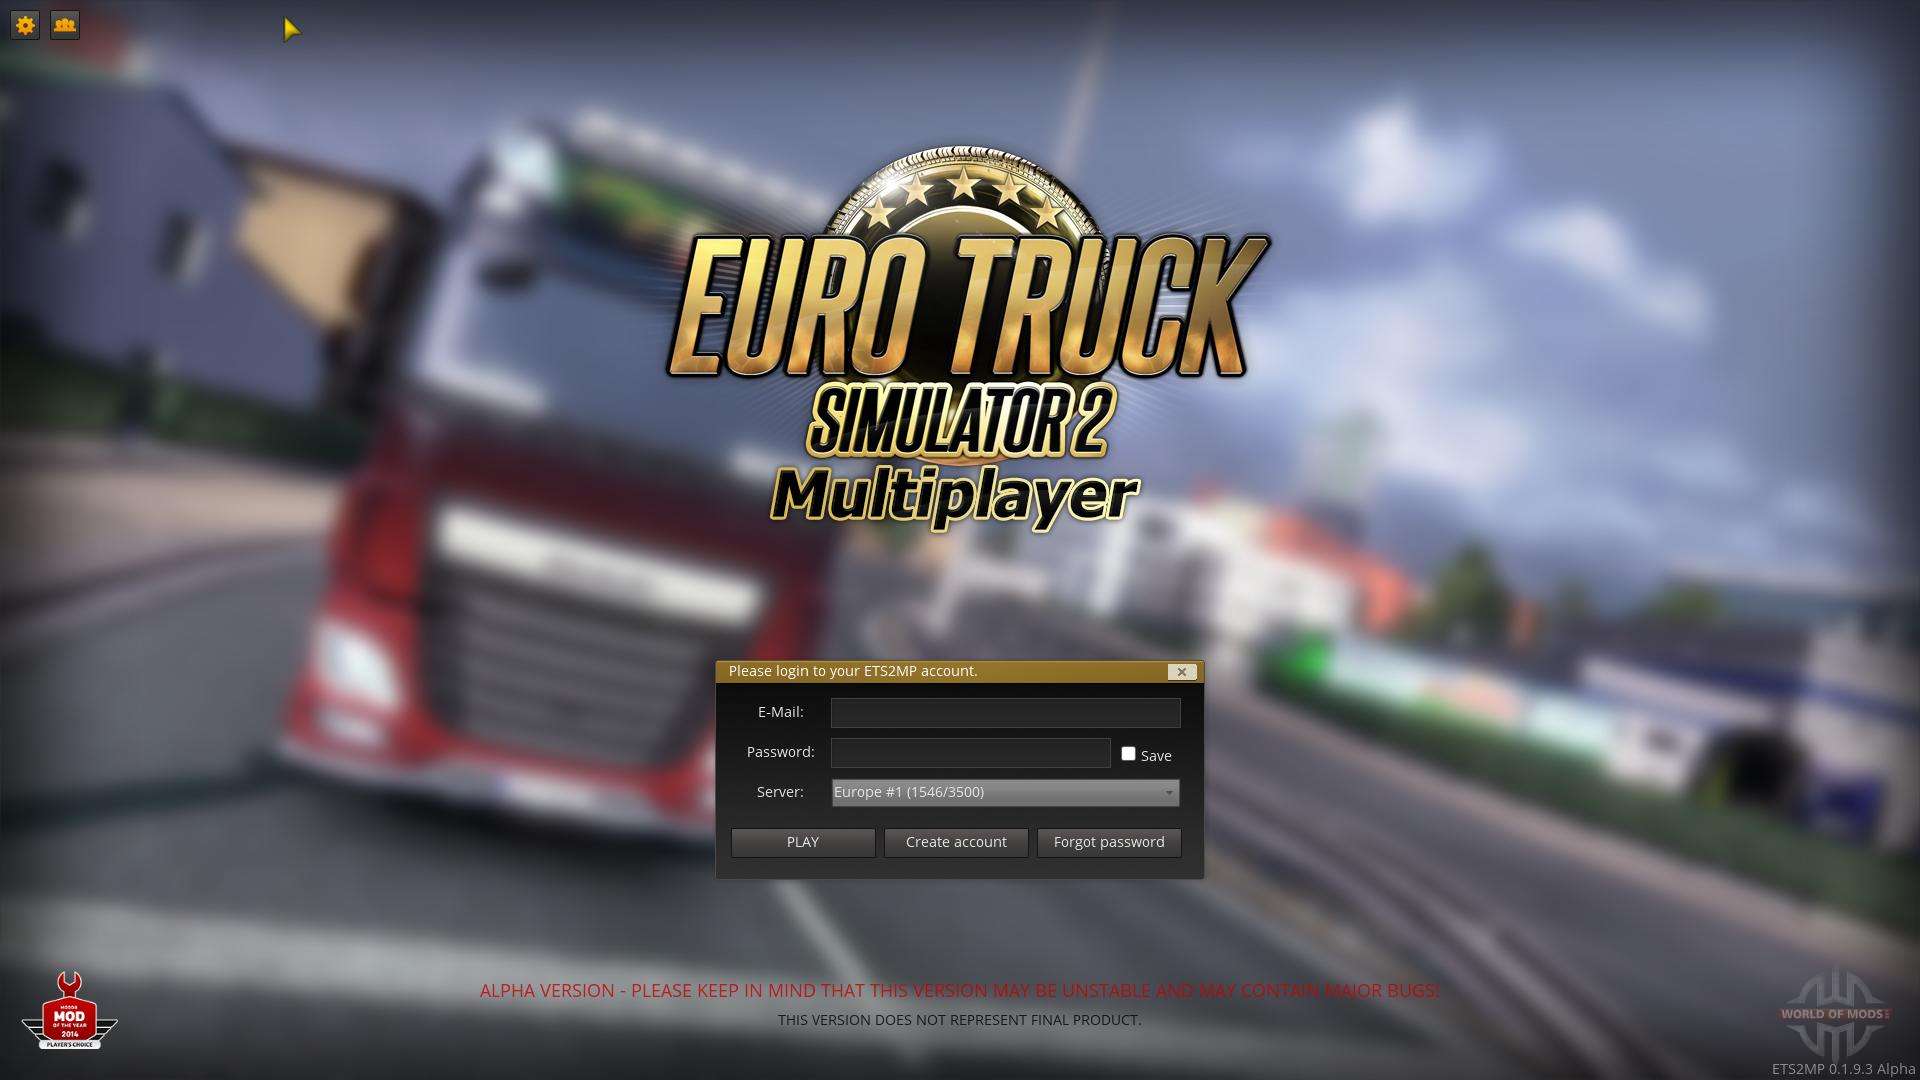 Скачать мультиплеер на евро трек симулятор 2 стим